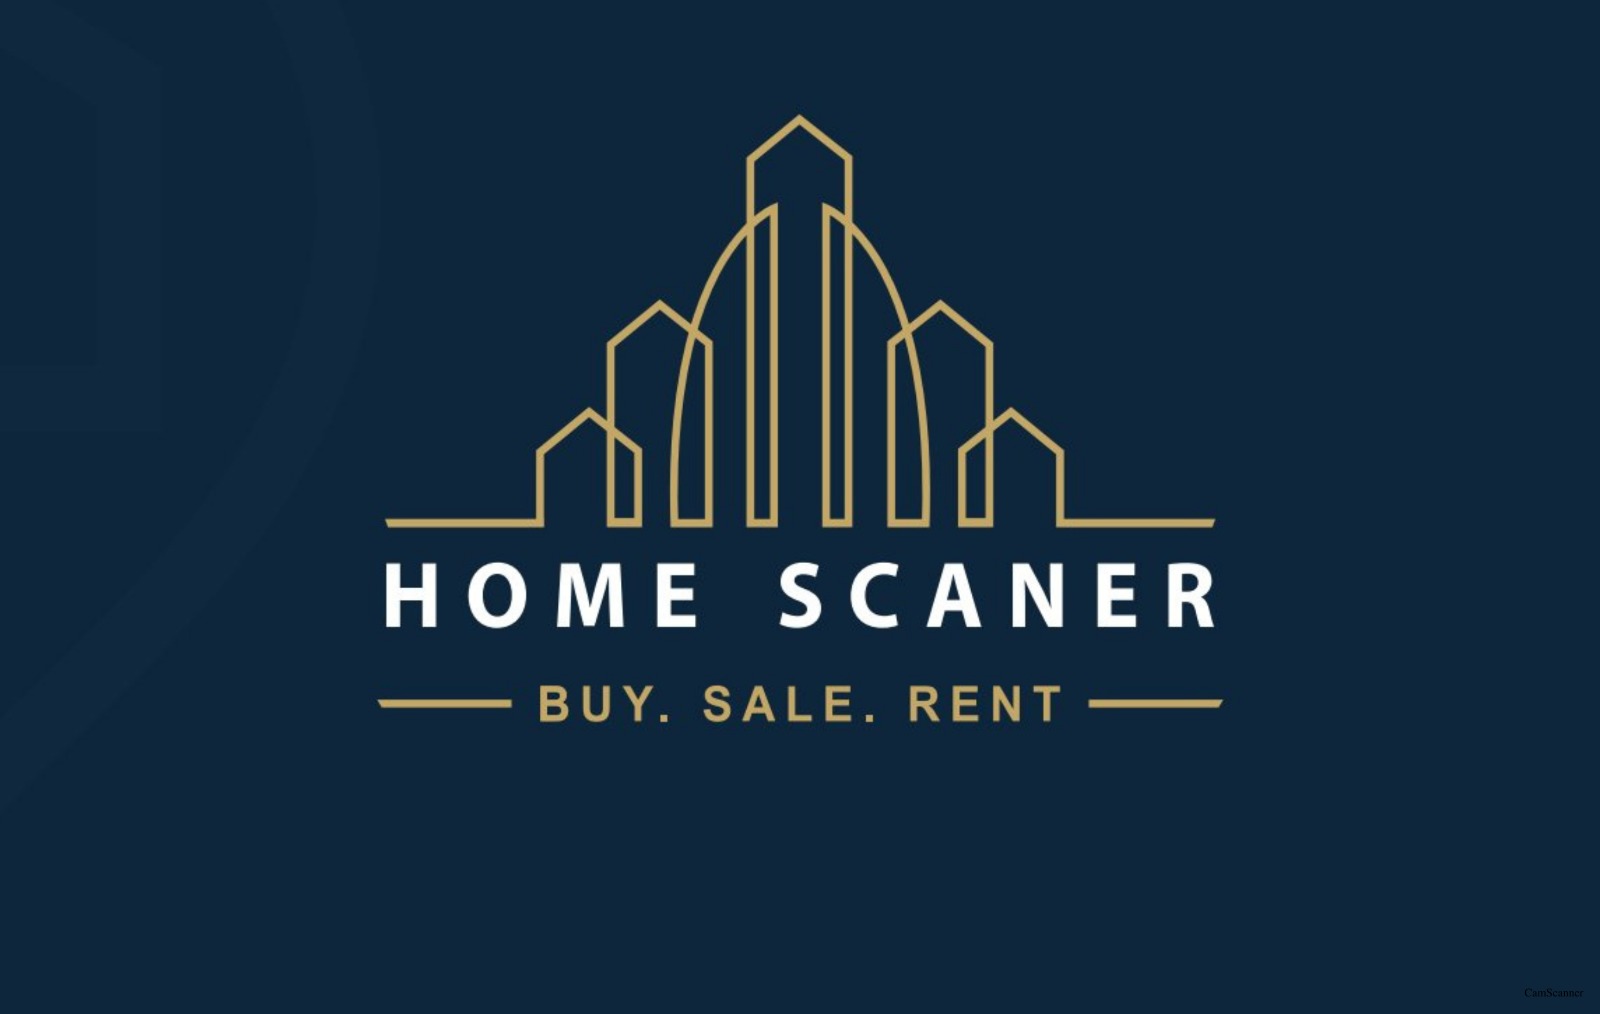 Homescaner Real Estate